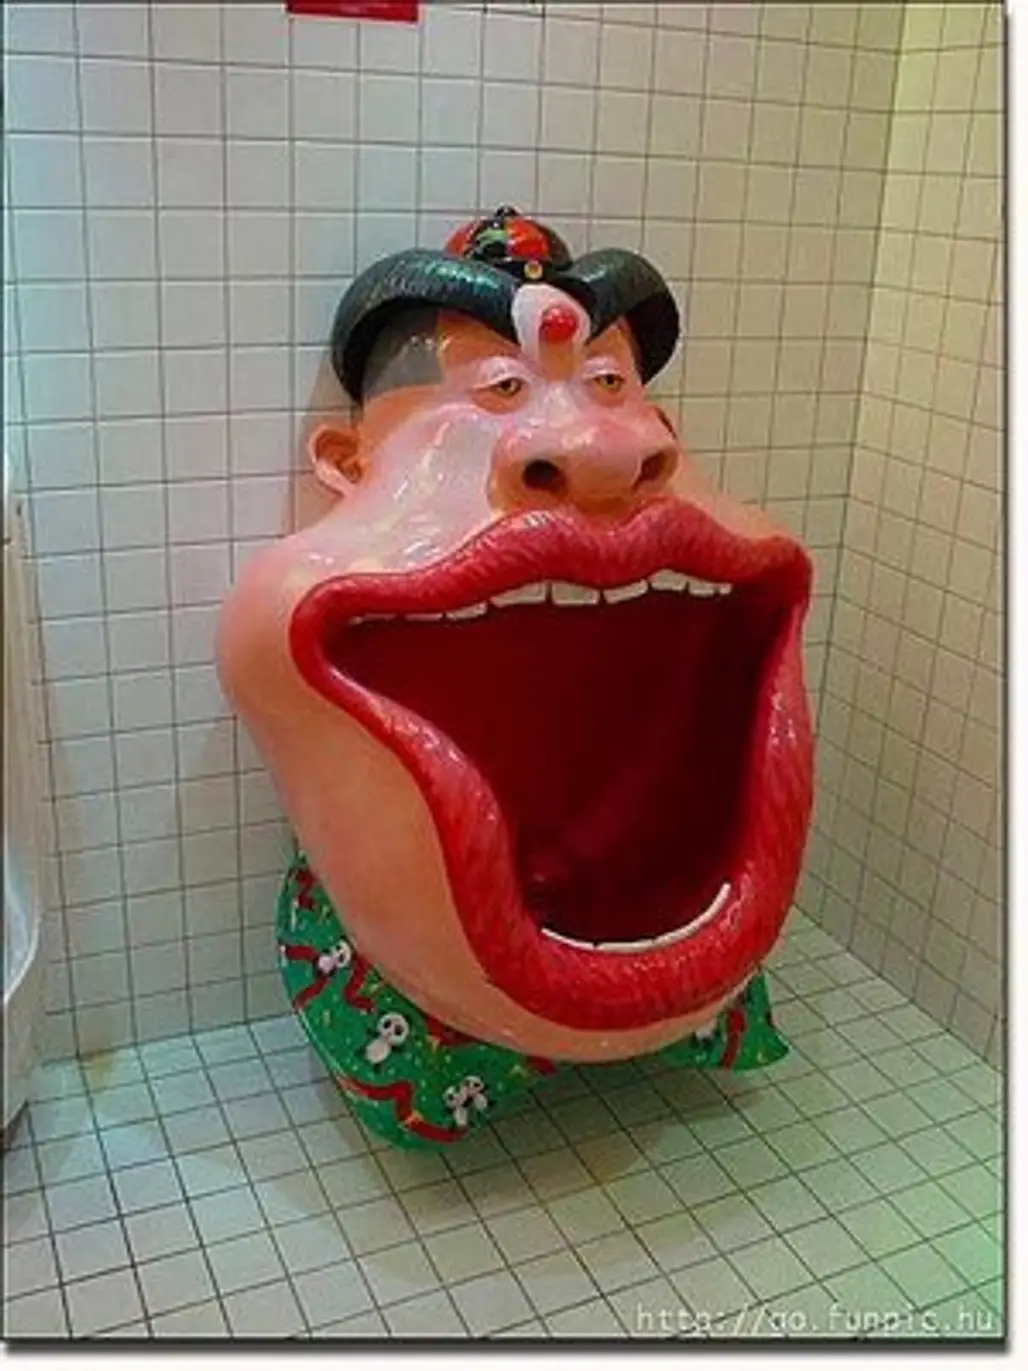 Clown Toilet